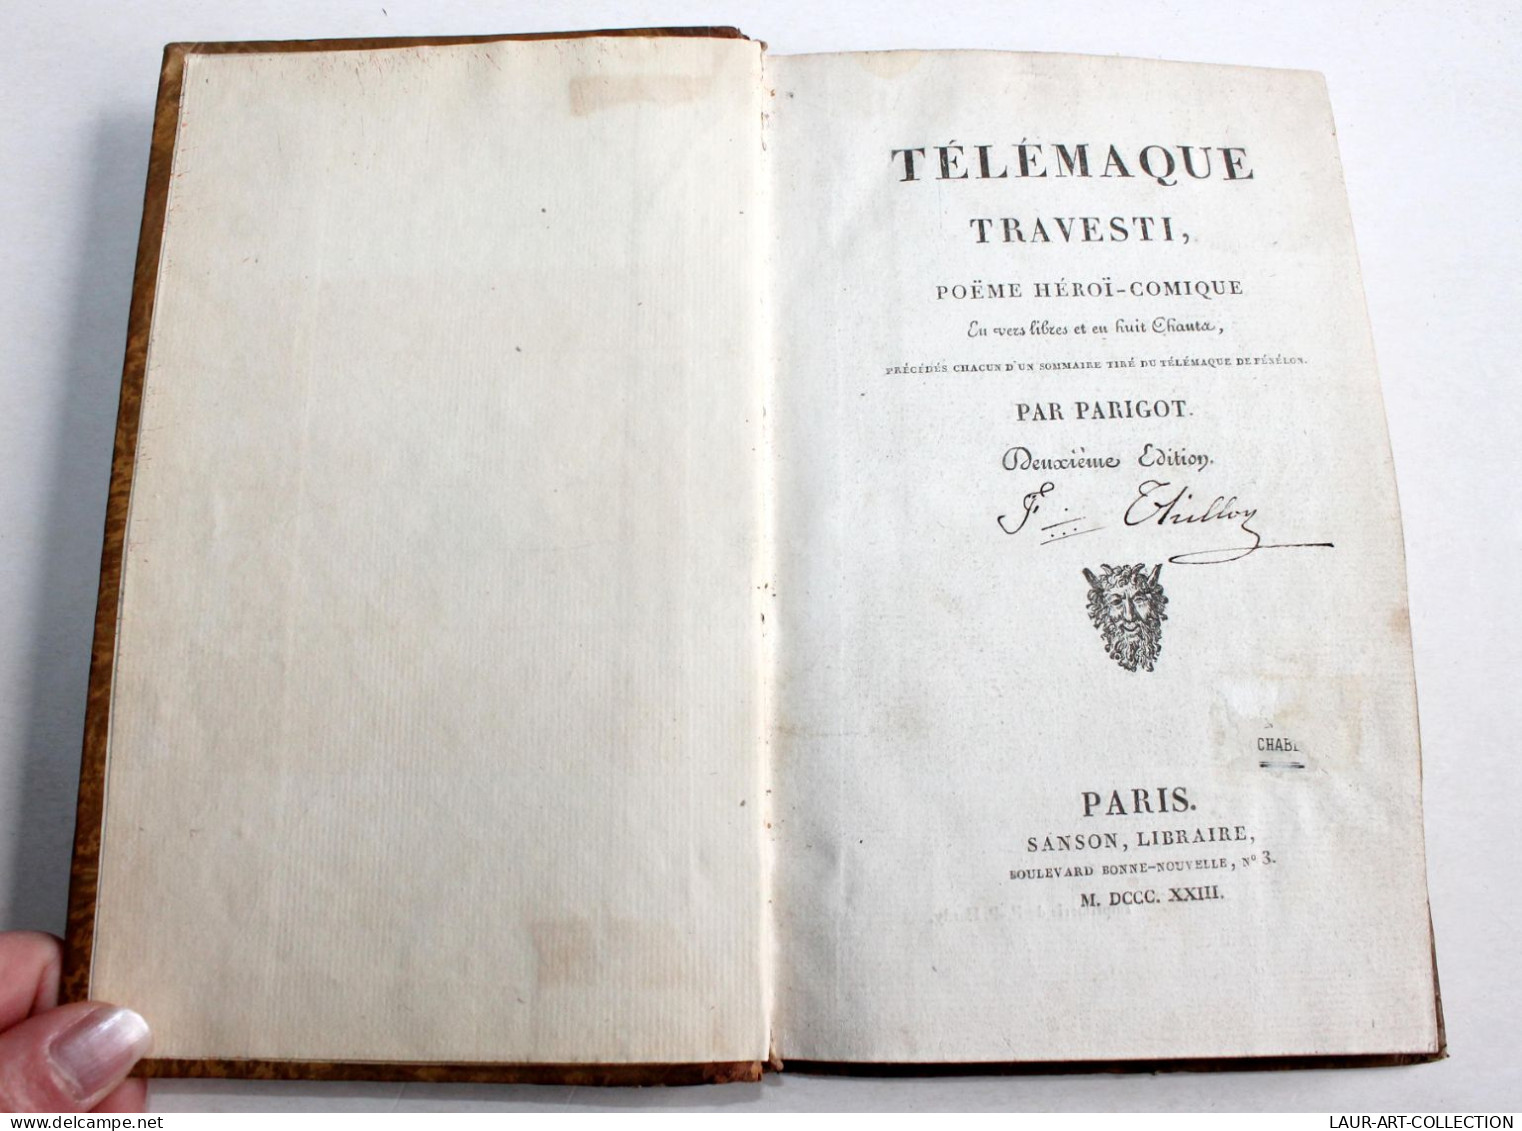 TELEMAQUE TRAVESTI POEME HEROI-COMIQUE EN VERS LIBRE Par PARIGOT 2e EDITION 1823 / ANCIEN LIVRE XIXe SIECLE (1803.79) - Franse Schrijvers